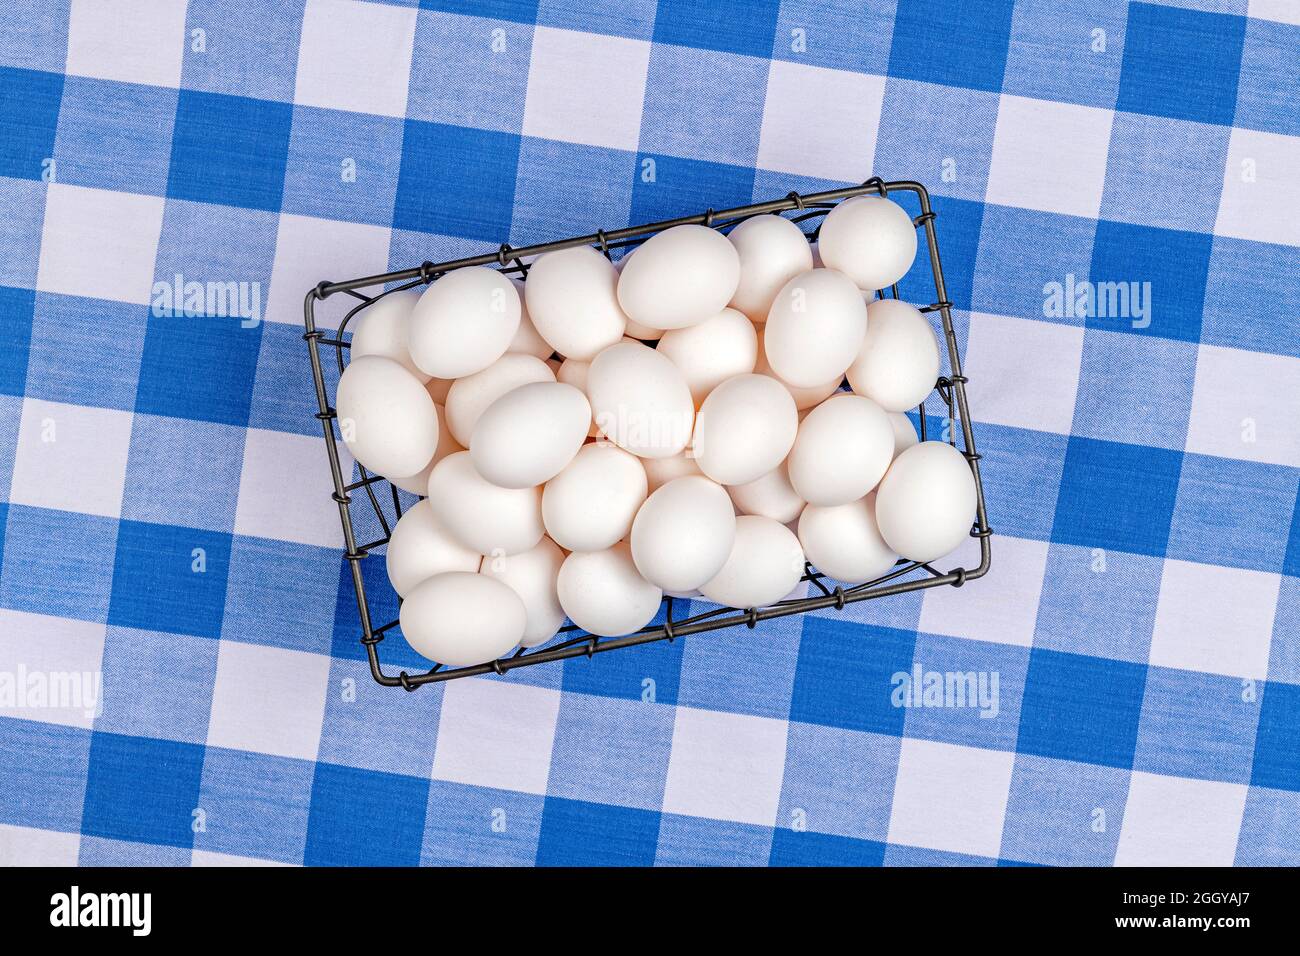 Eine kleine Kiste mit frischen Eiern liegt auf einer Tischplatte, die mit einer traditionellen, blau-weiß karierten Tischdecke bedeckt ist. Stockfoto